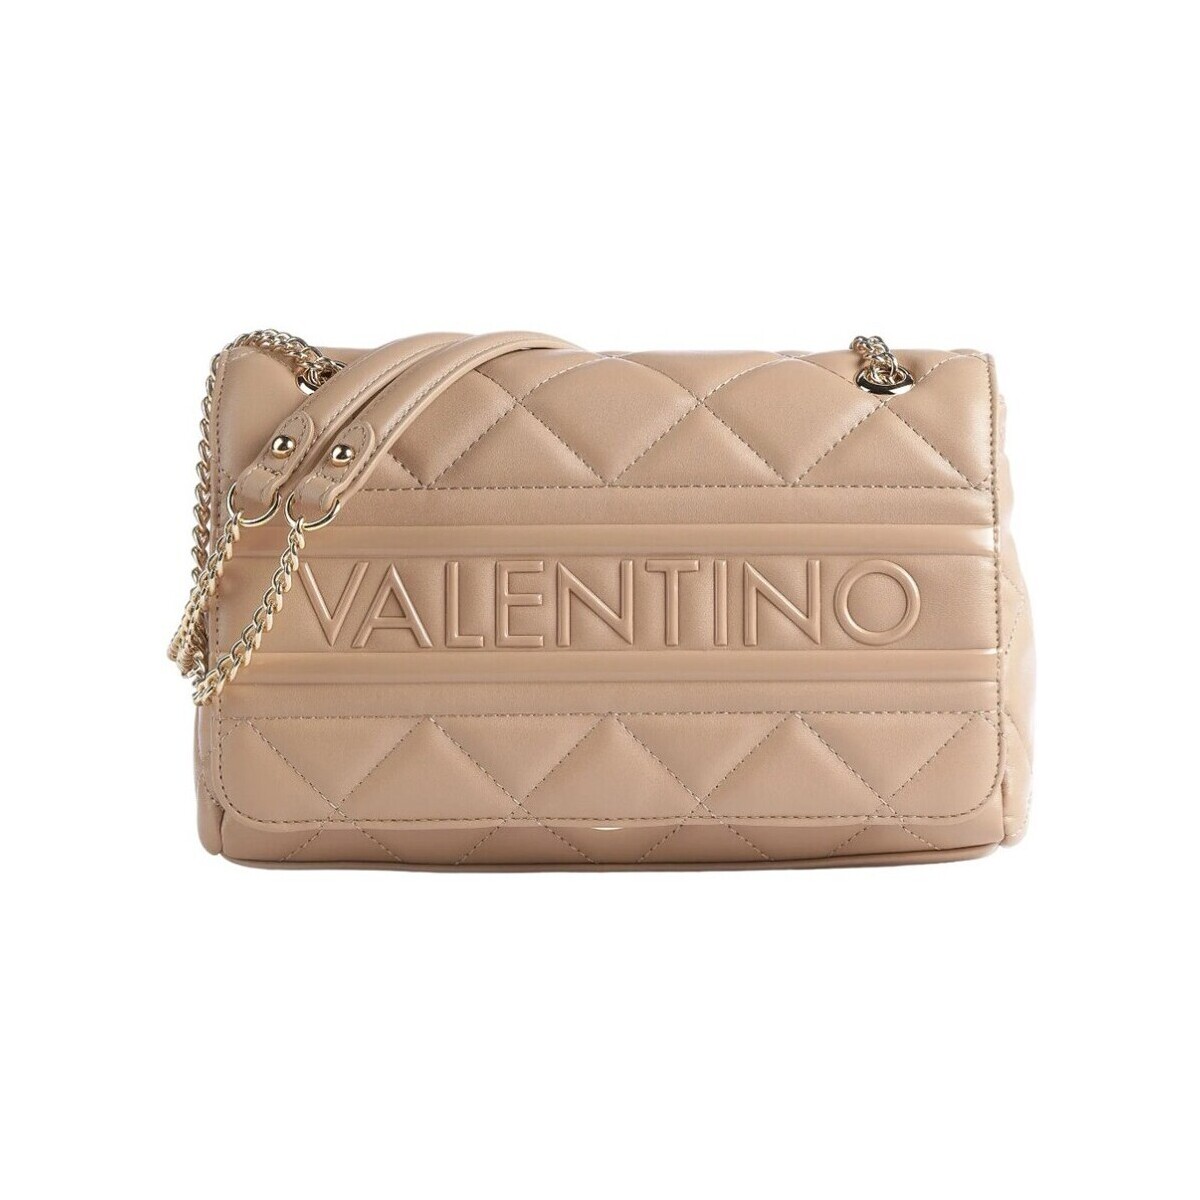 Sacs Femme Sacs porté main Valentino Handbags VBS51O05 005 Beige